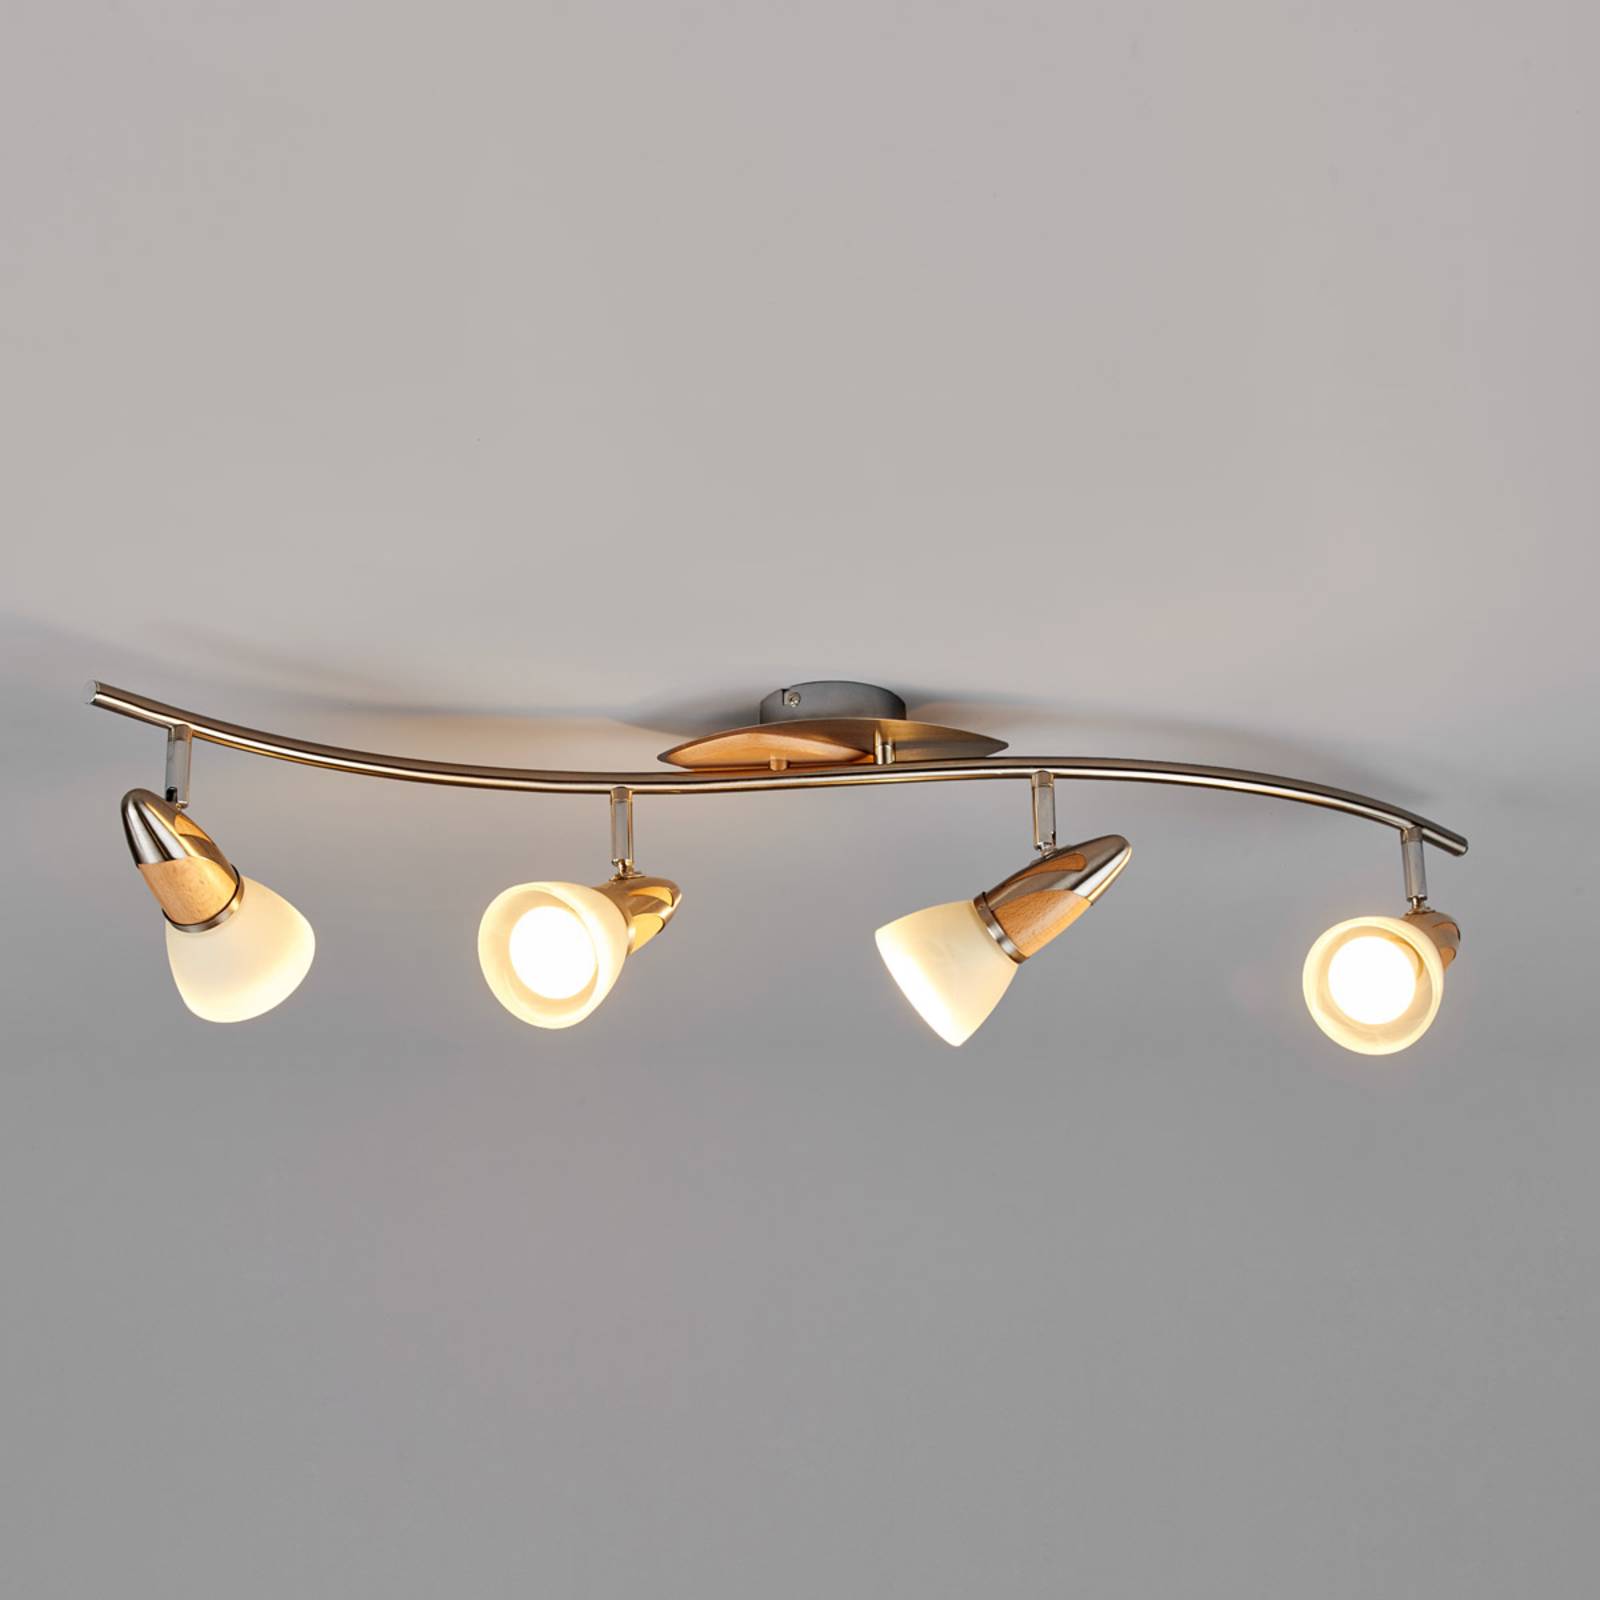 Zdjęcia - Reflektor punktowy Lindby Lampa sufitowa  Marena, 4-punktowa, szkło, drewno, 83 cm dług 